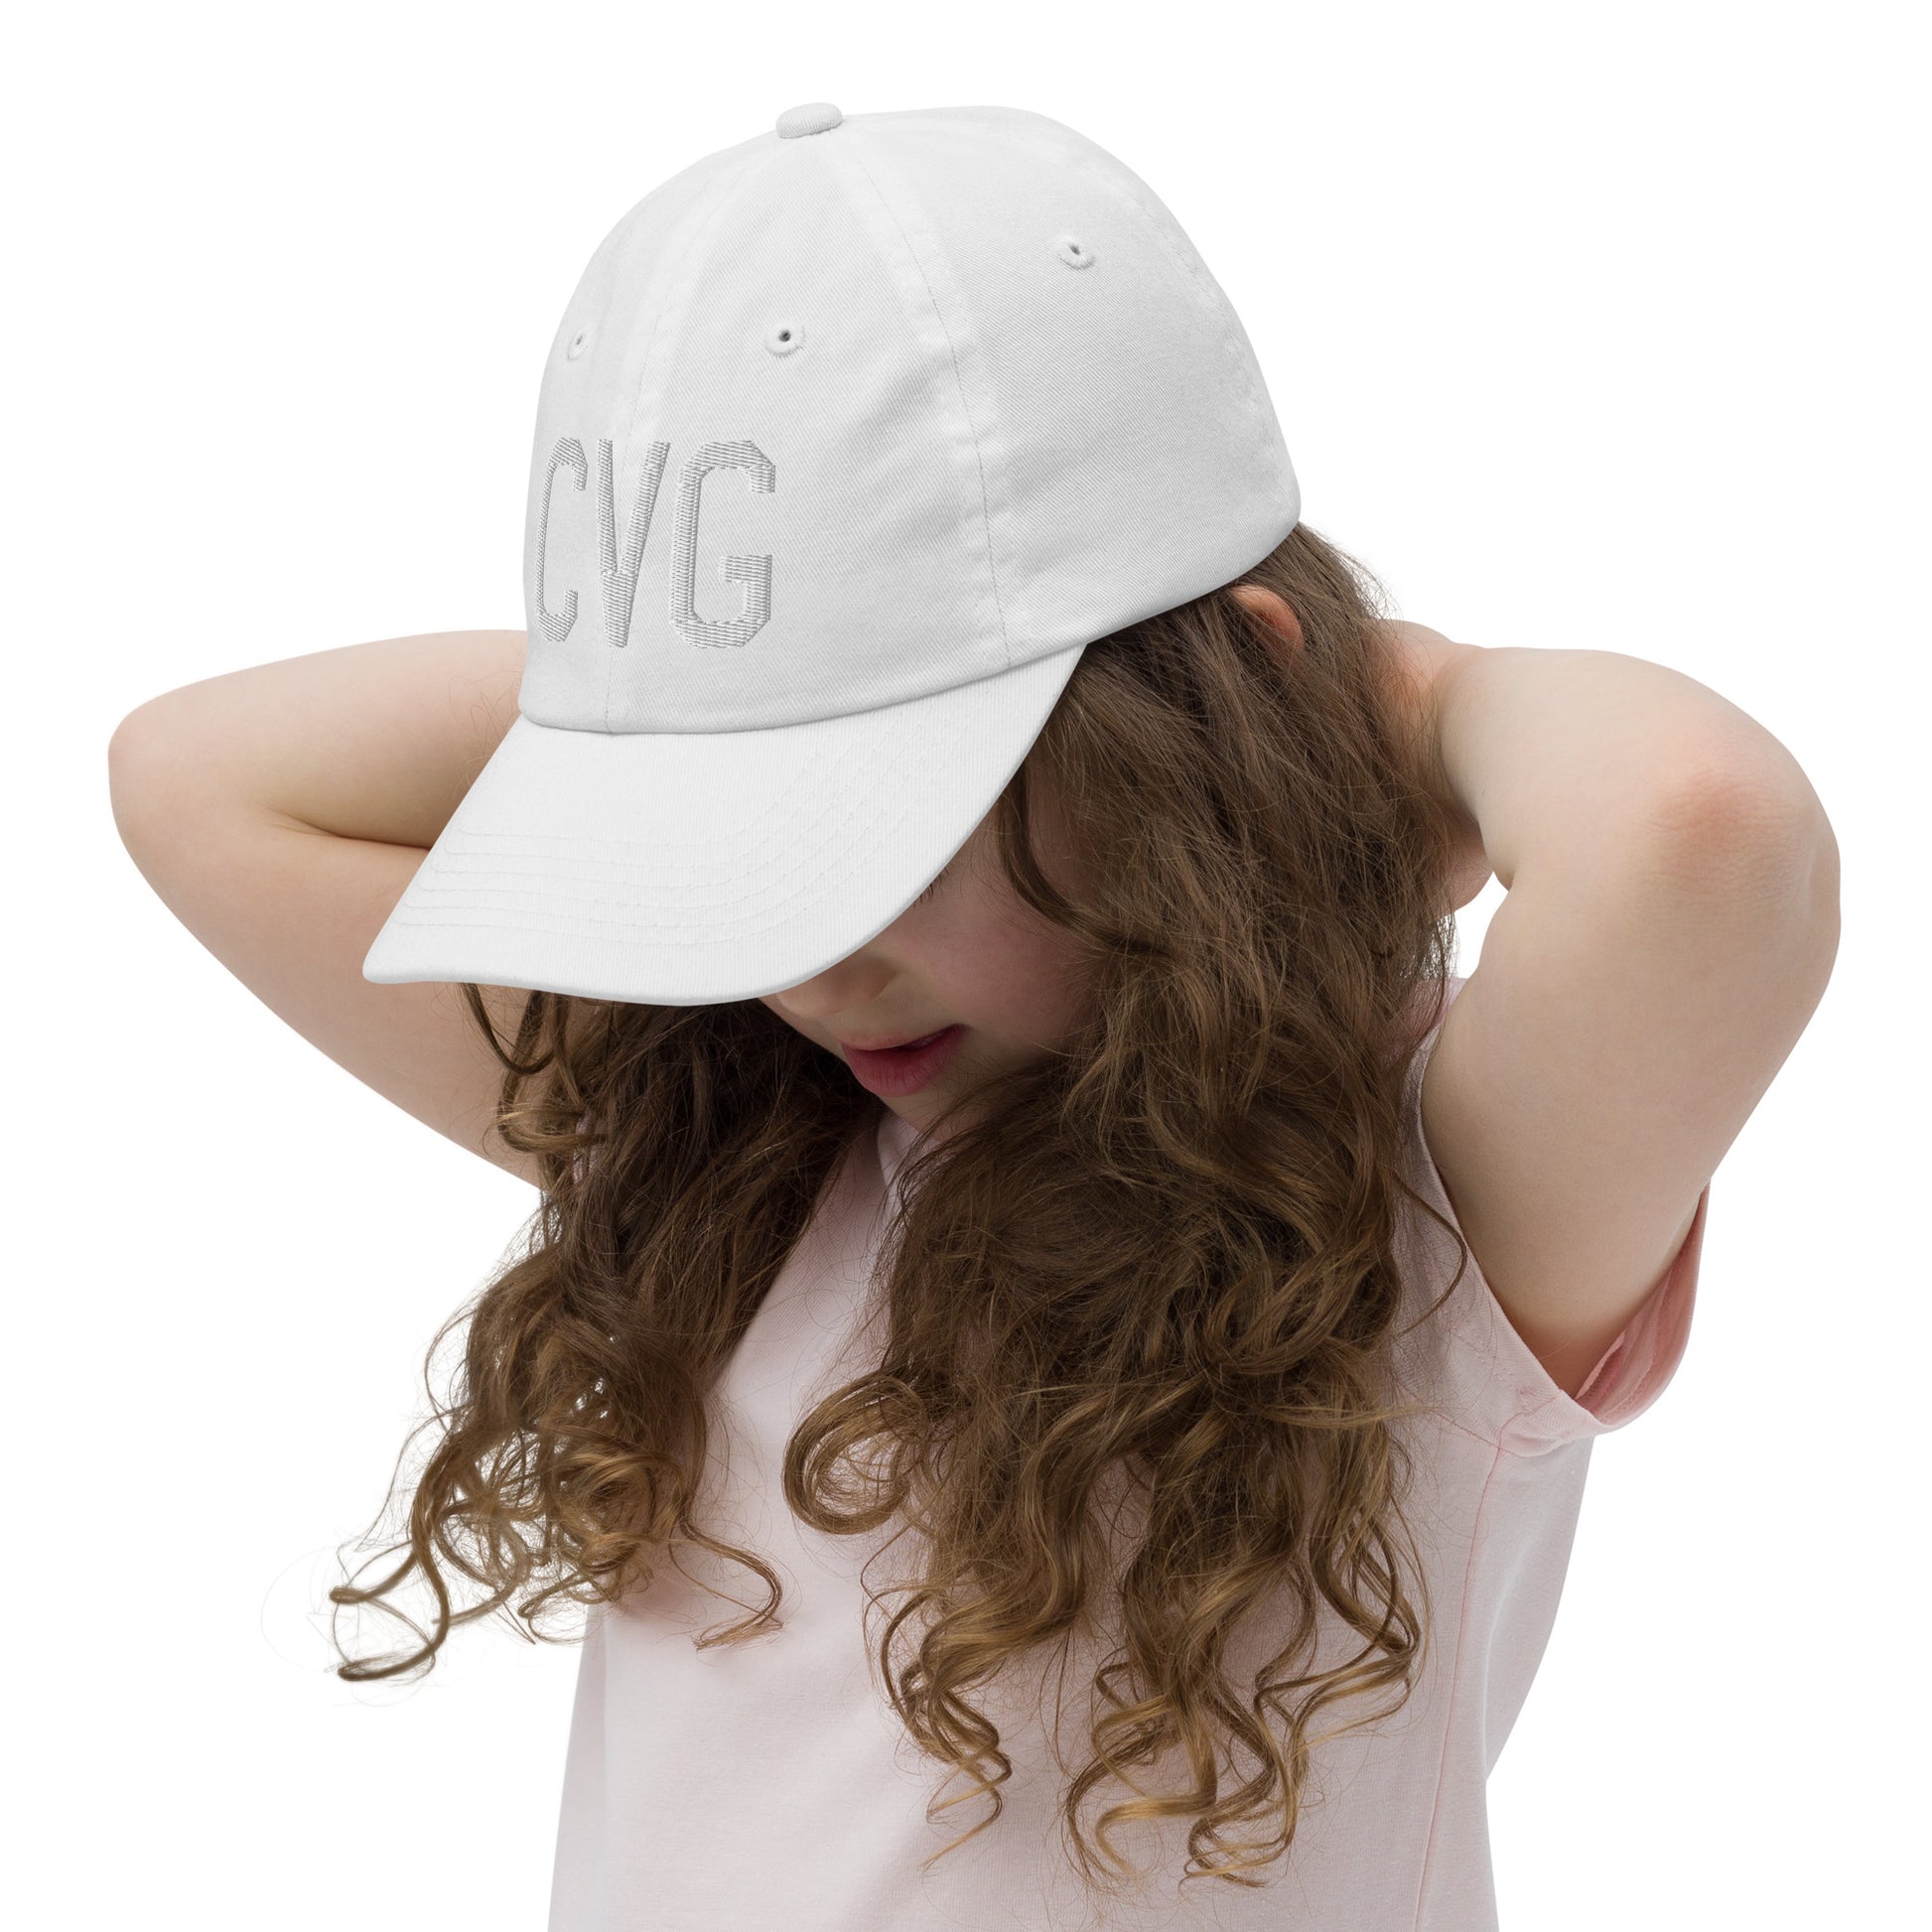 Airport Code Kid's Baseball Cap - White • CVG Cincinnati • YHM Designs - Image 10